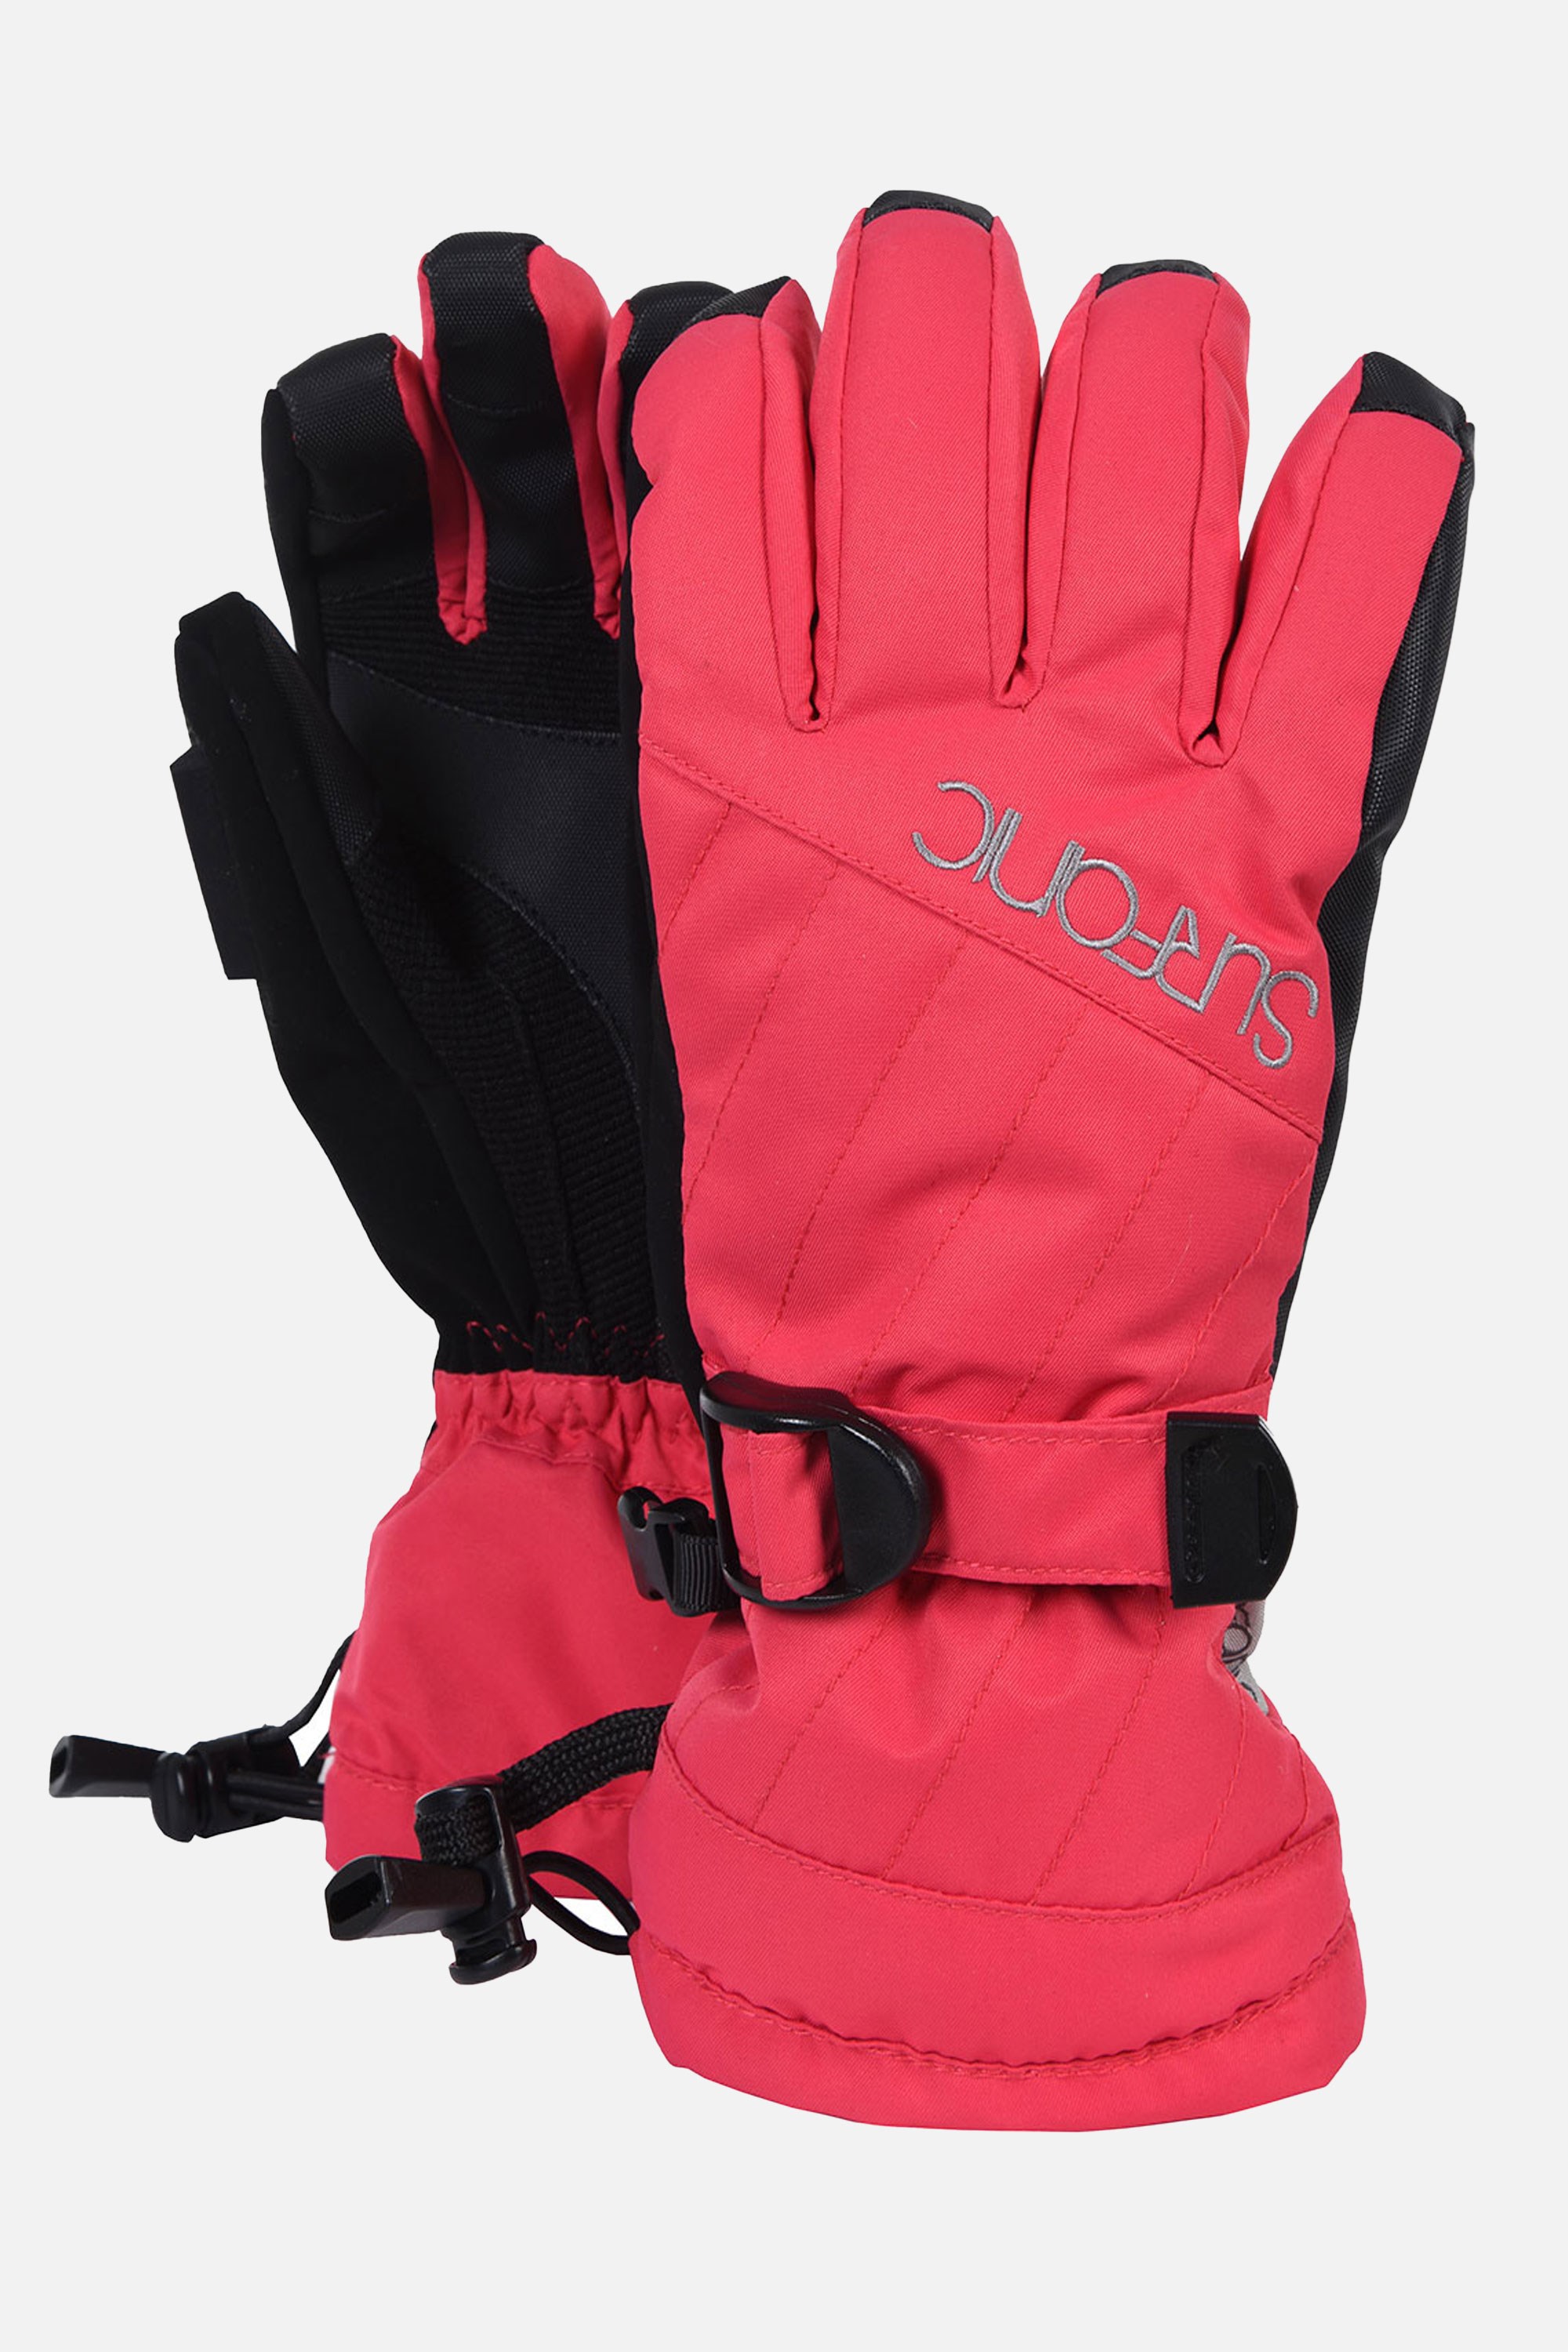 Feeler Surftex Womens Ski Gloves -